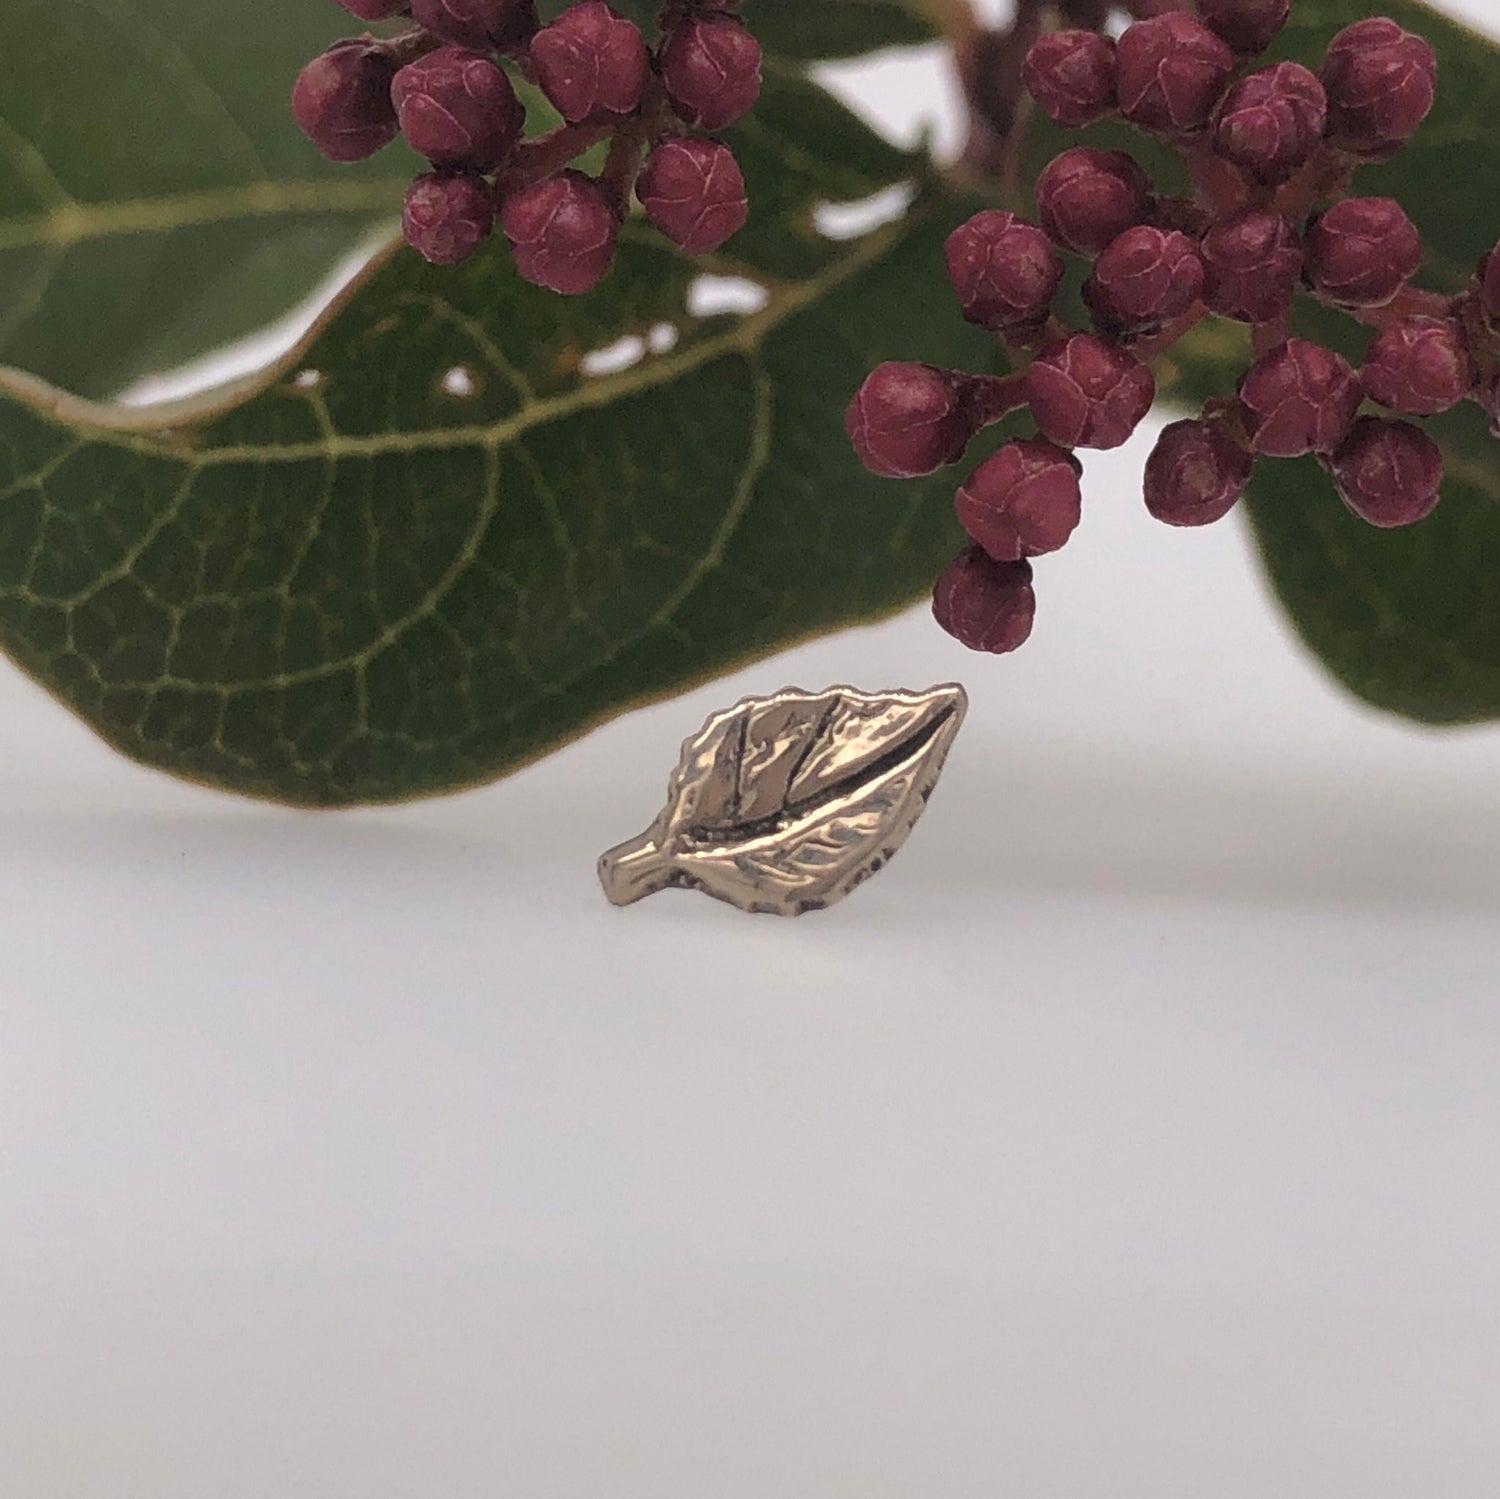 Aspen Leaf - Agave in Bloom